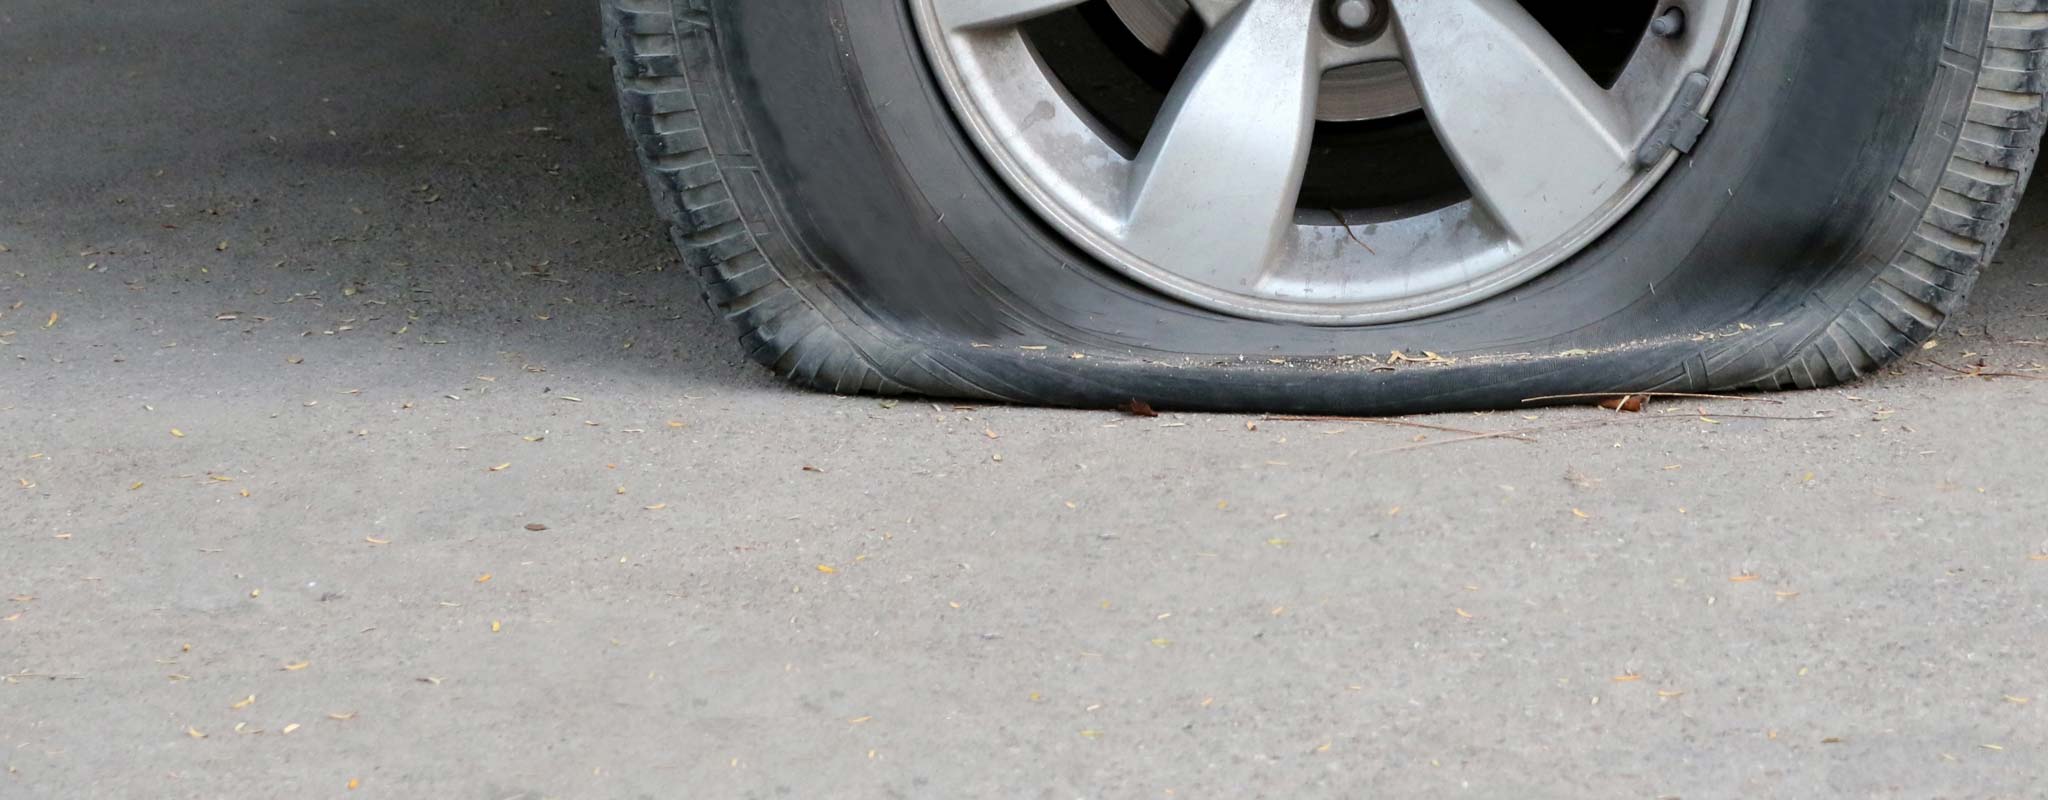 A flat tire on a car.